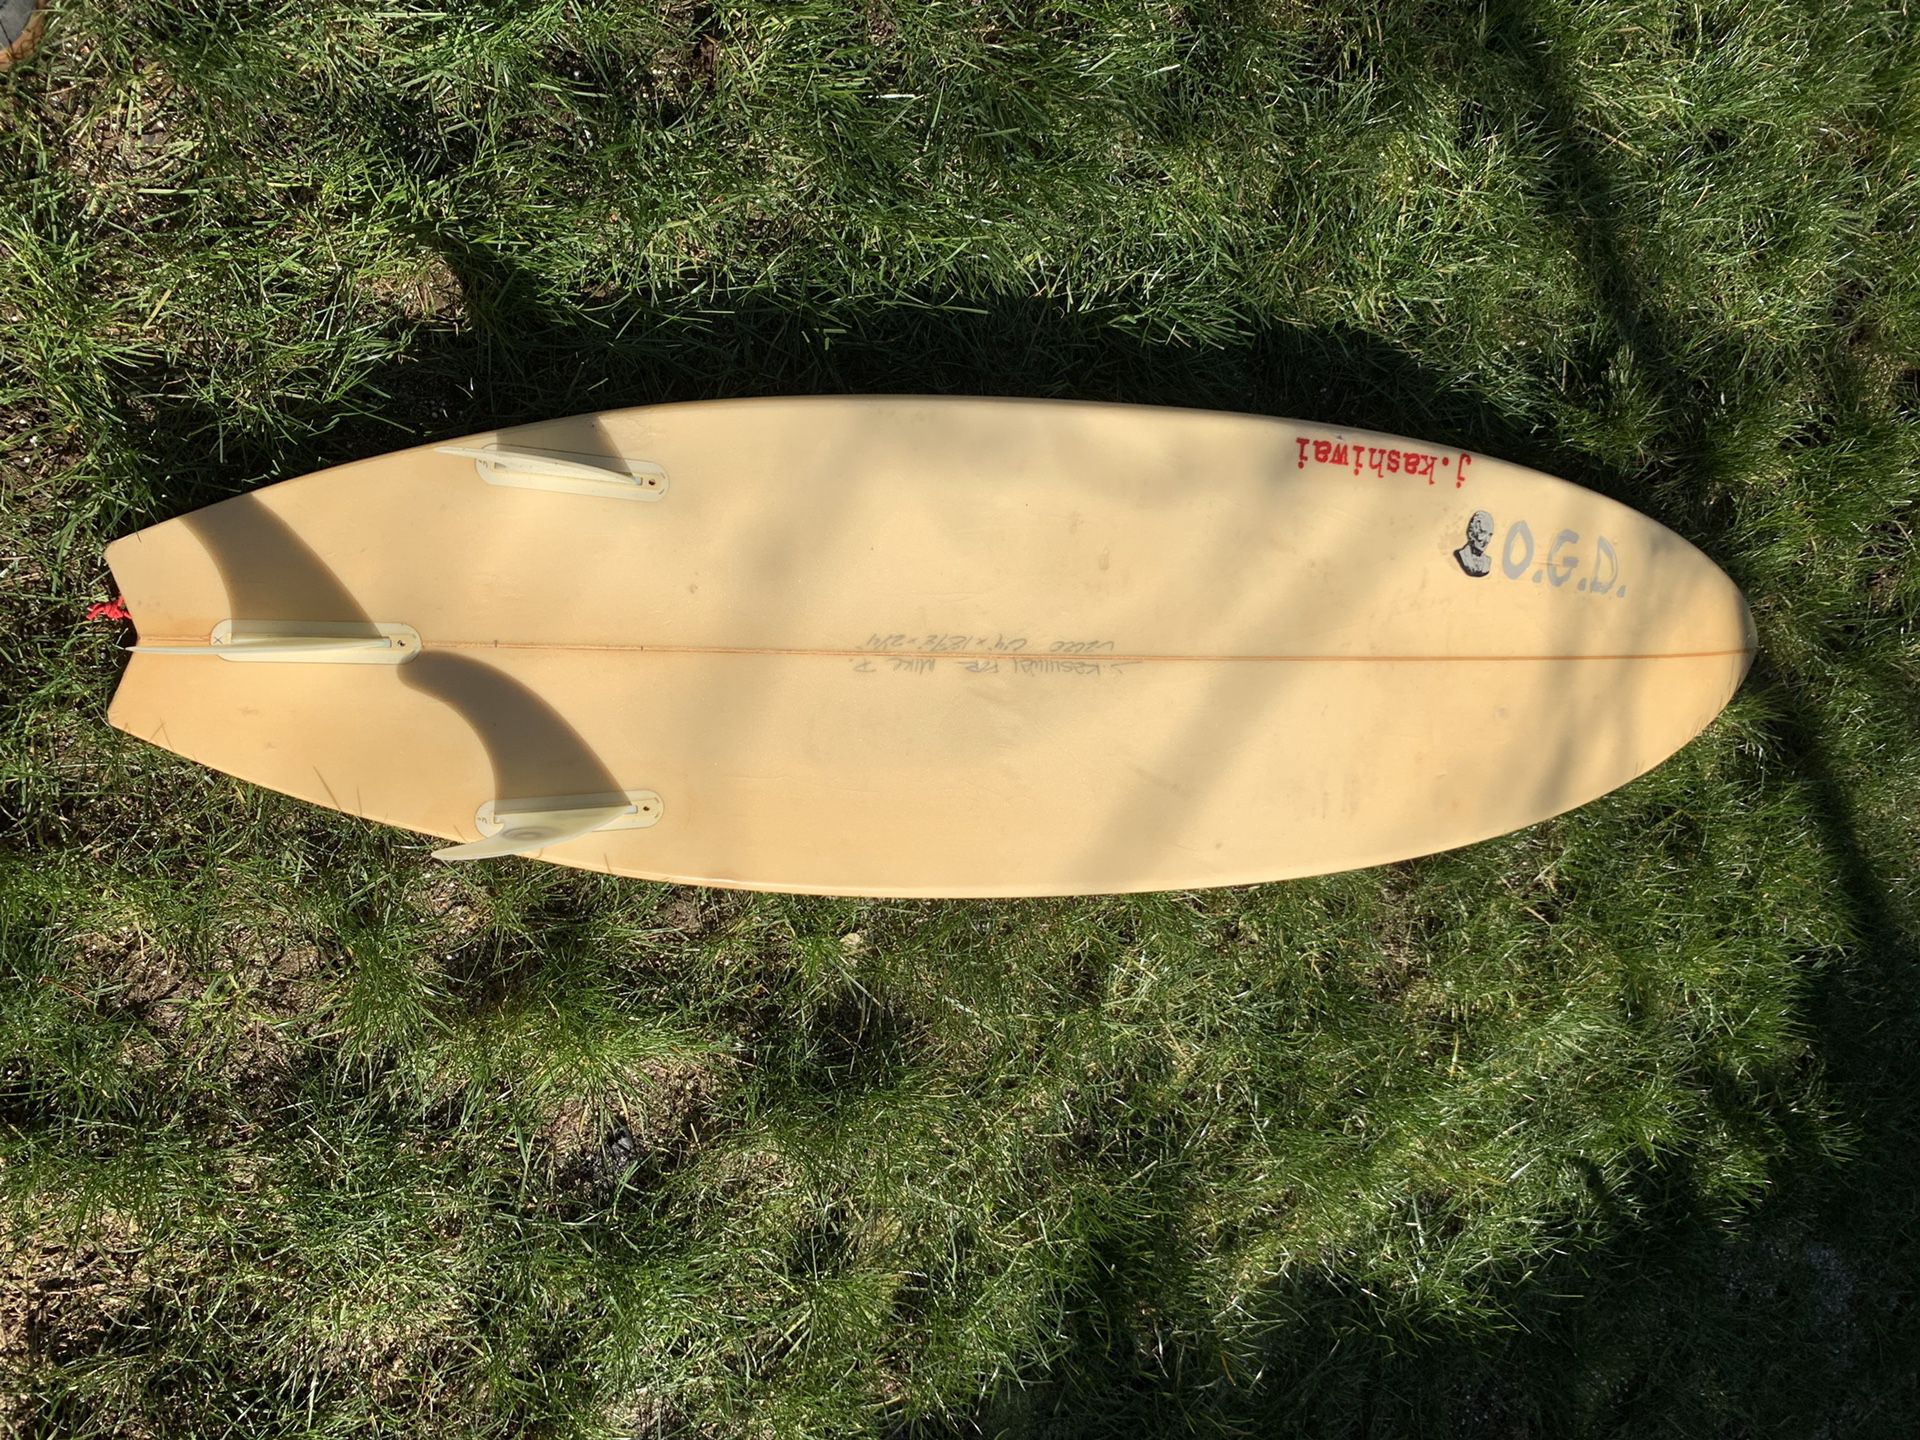 J.Kashiwai 6’4” surfboard